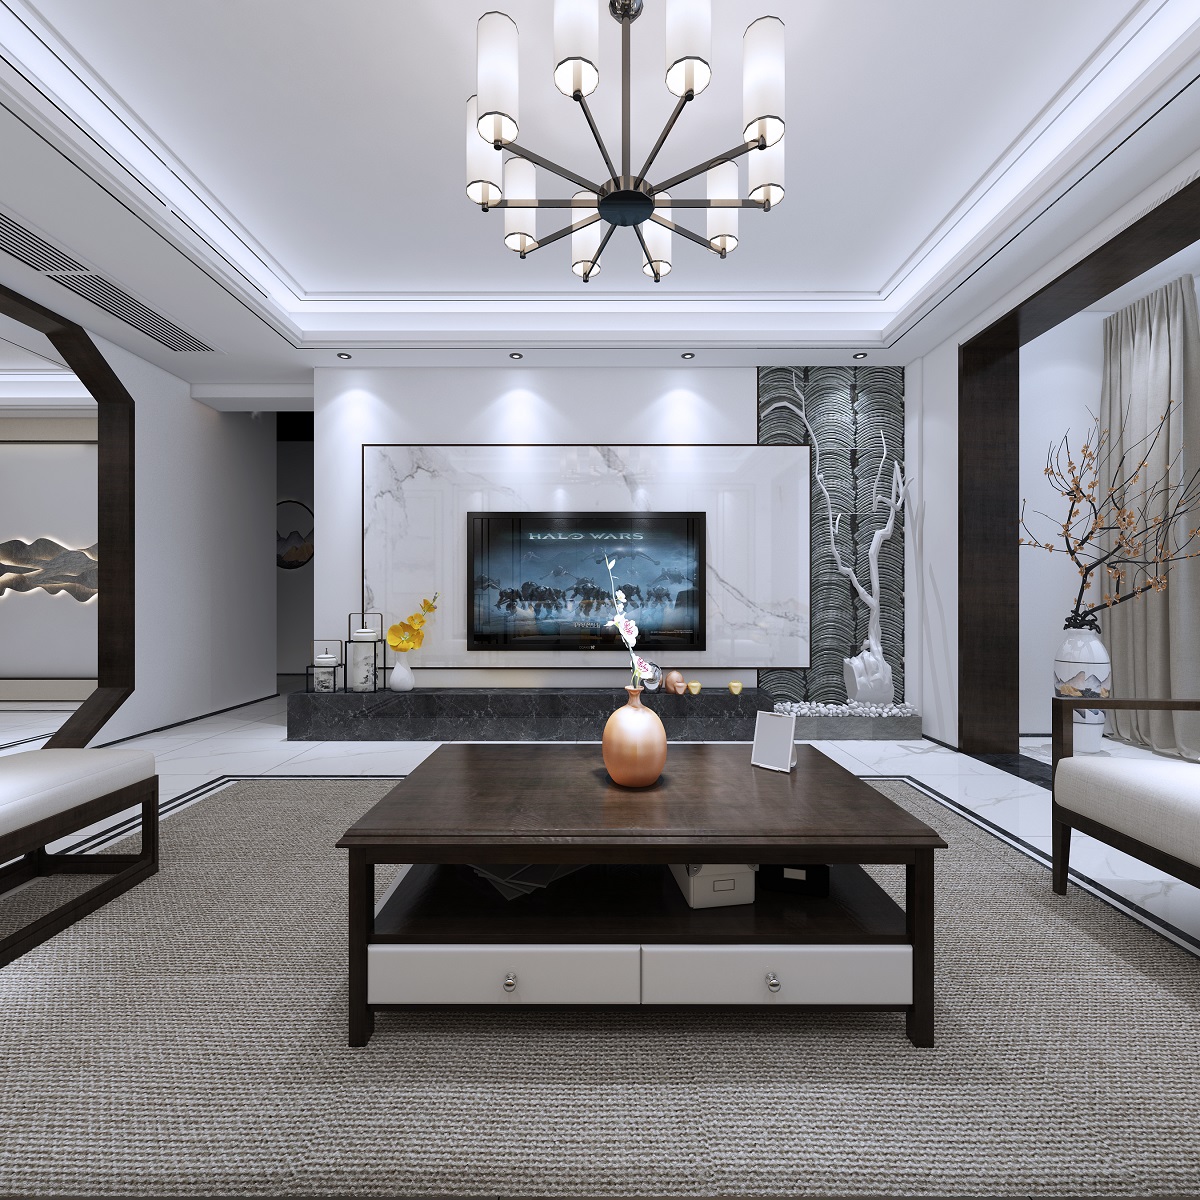 新中式风格室内装修设计效果图-中海文华熙岸三居115平米-室内装修设计客厅